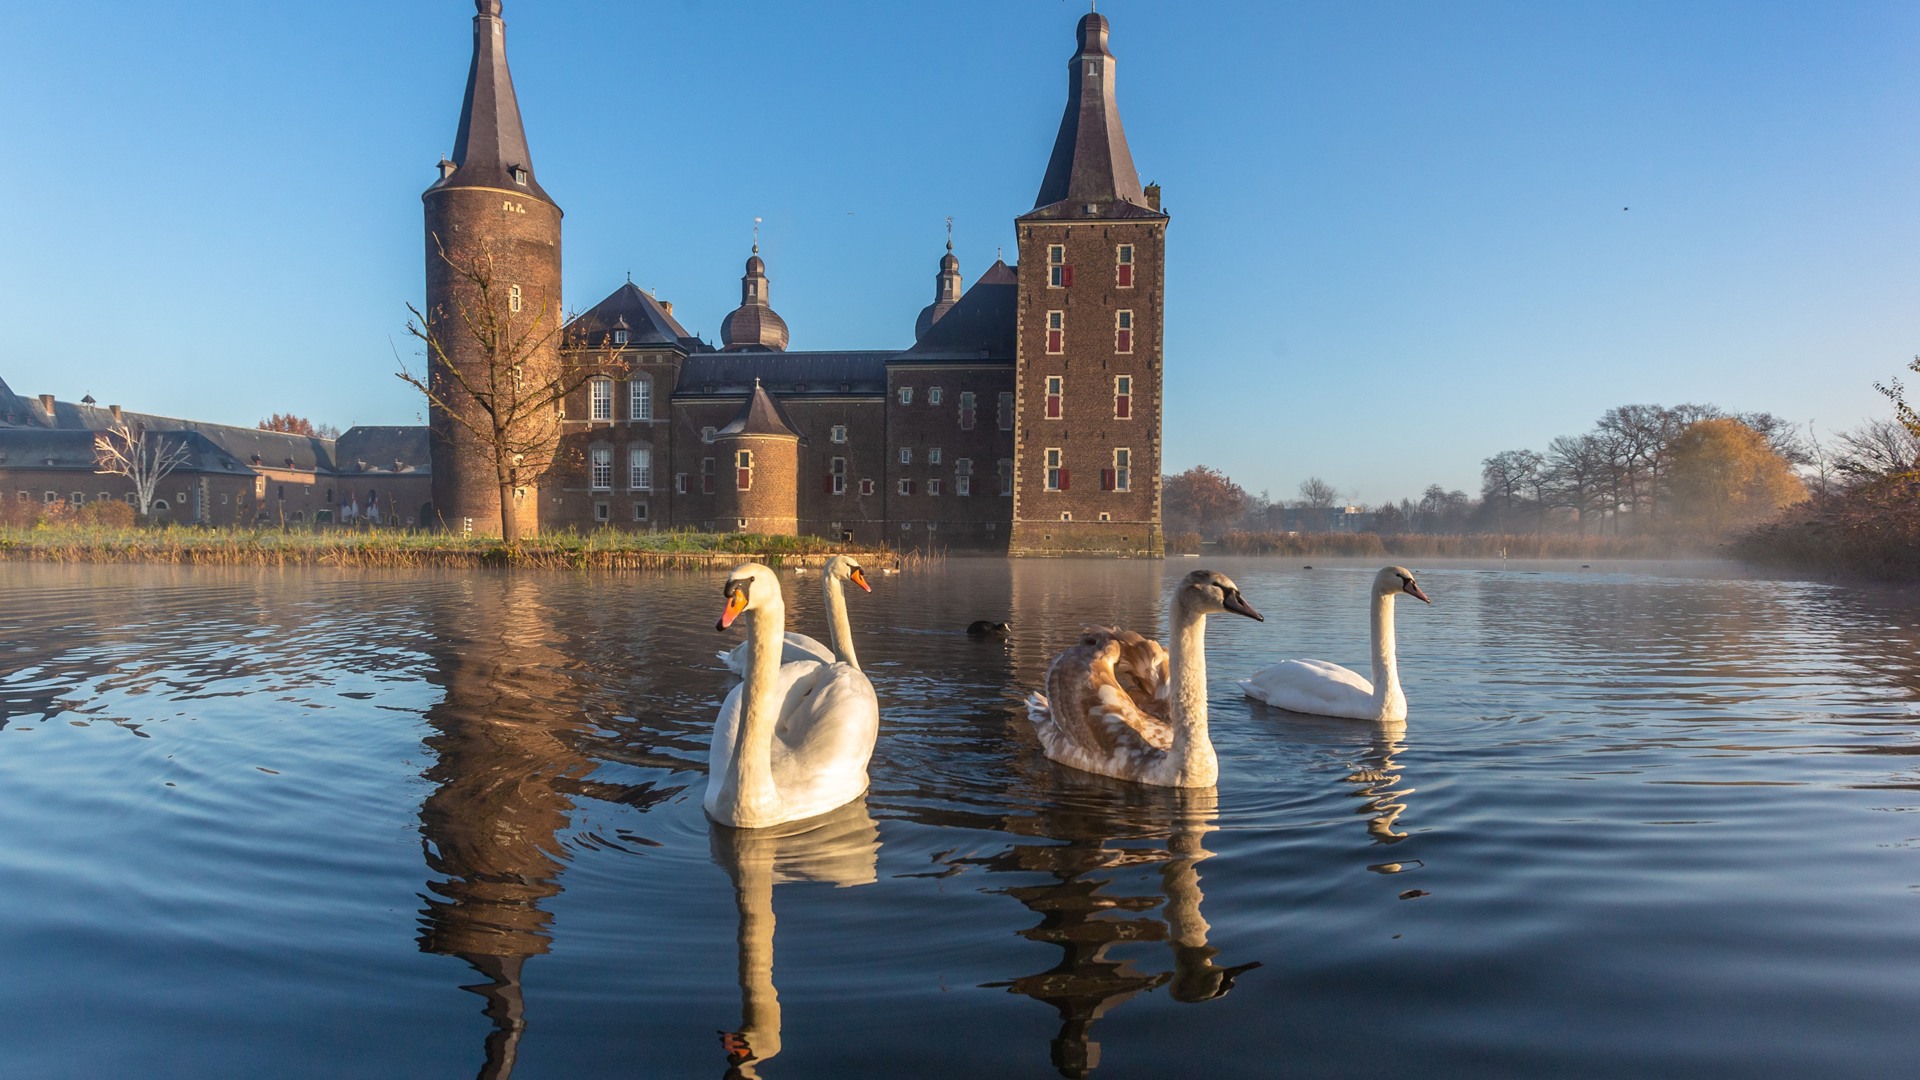 Kasteel Hoensbroek in Heerlen: een leuke activiteit tijdens je vakantie in oktober